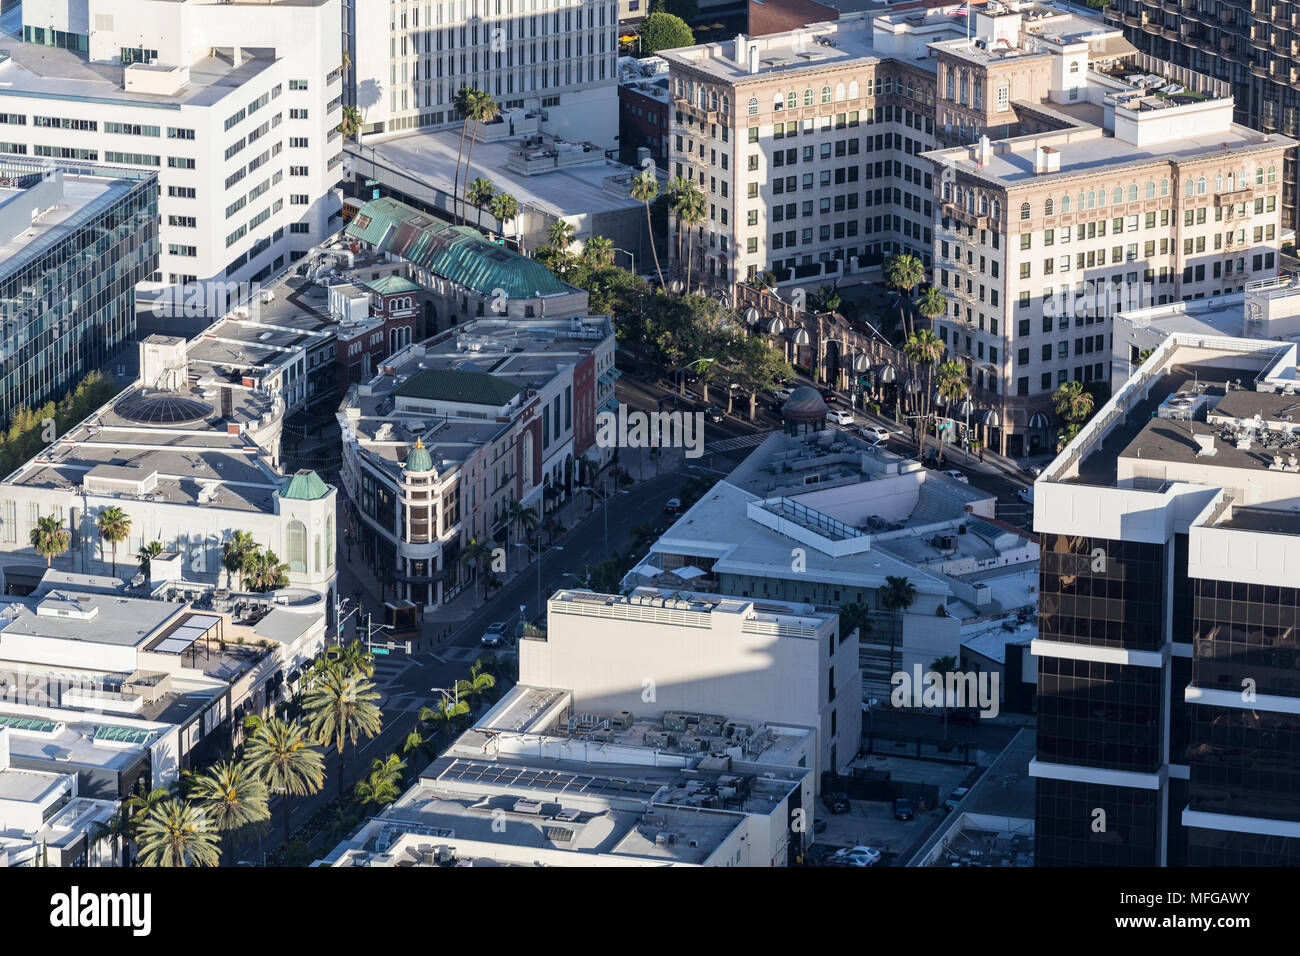 Vista aérea de Rodeo Drive en Wilshire Blvd. en el corazón del distrito de tiendas de lujo de Beverly Hills, cerca de Los Angeles, California. Foto de stock